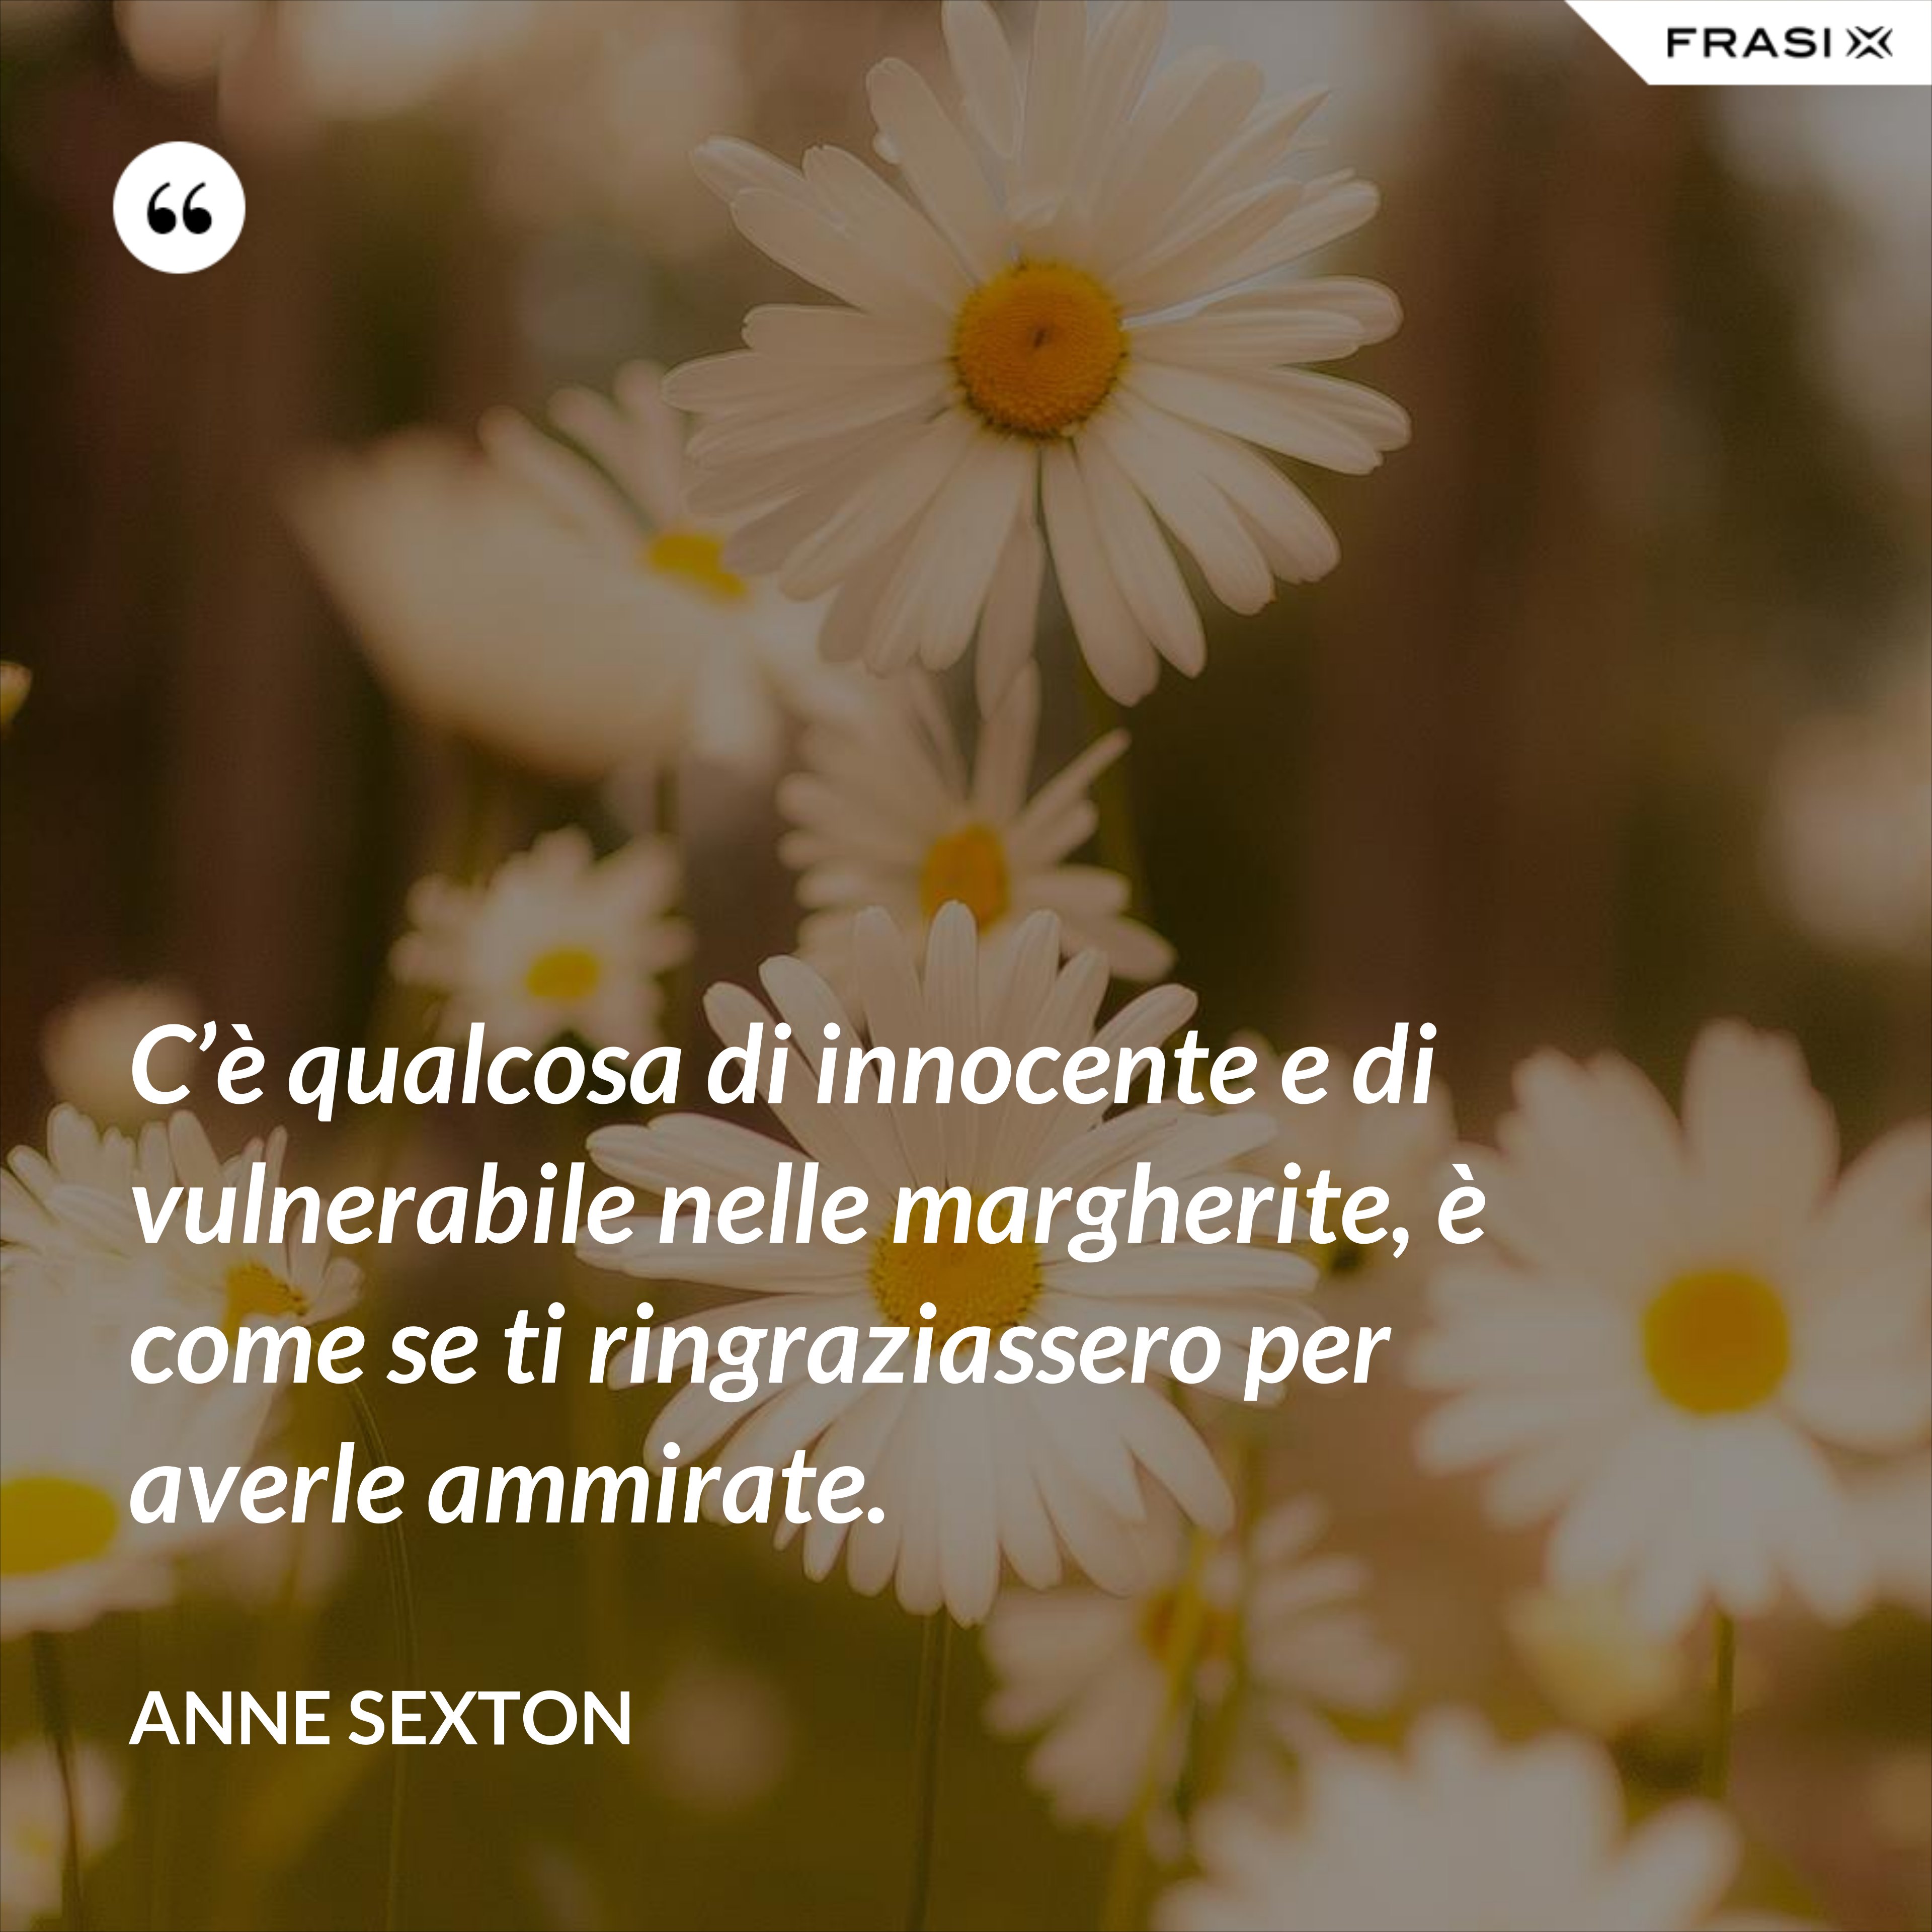 C’è qualcosa di innocente e di vulnerabile nelle margherite, è come se ti ringraziassero per averle ammirate. - Anne Sexton